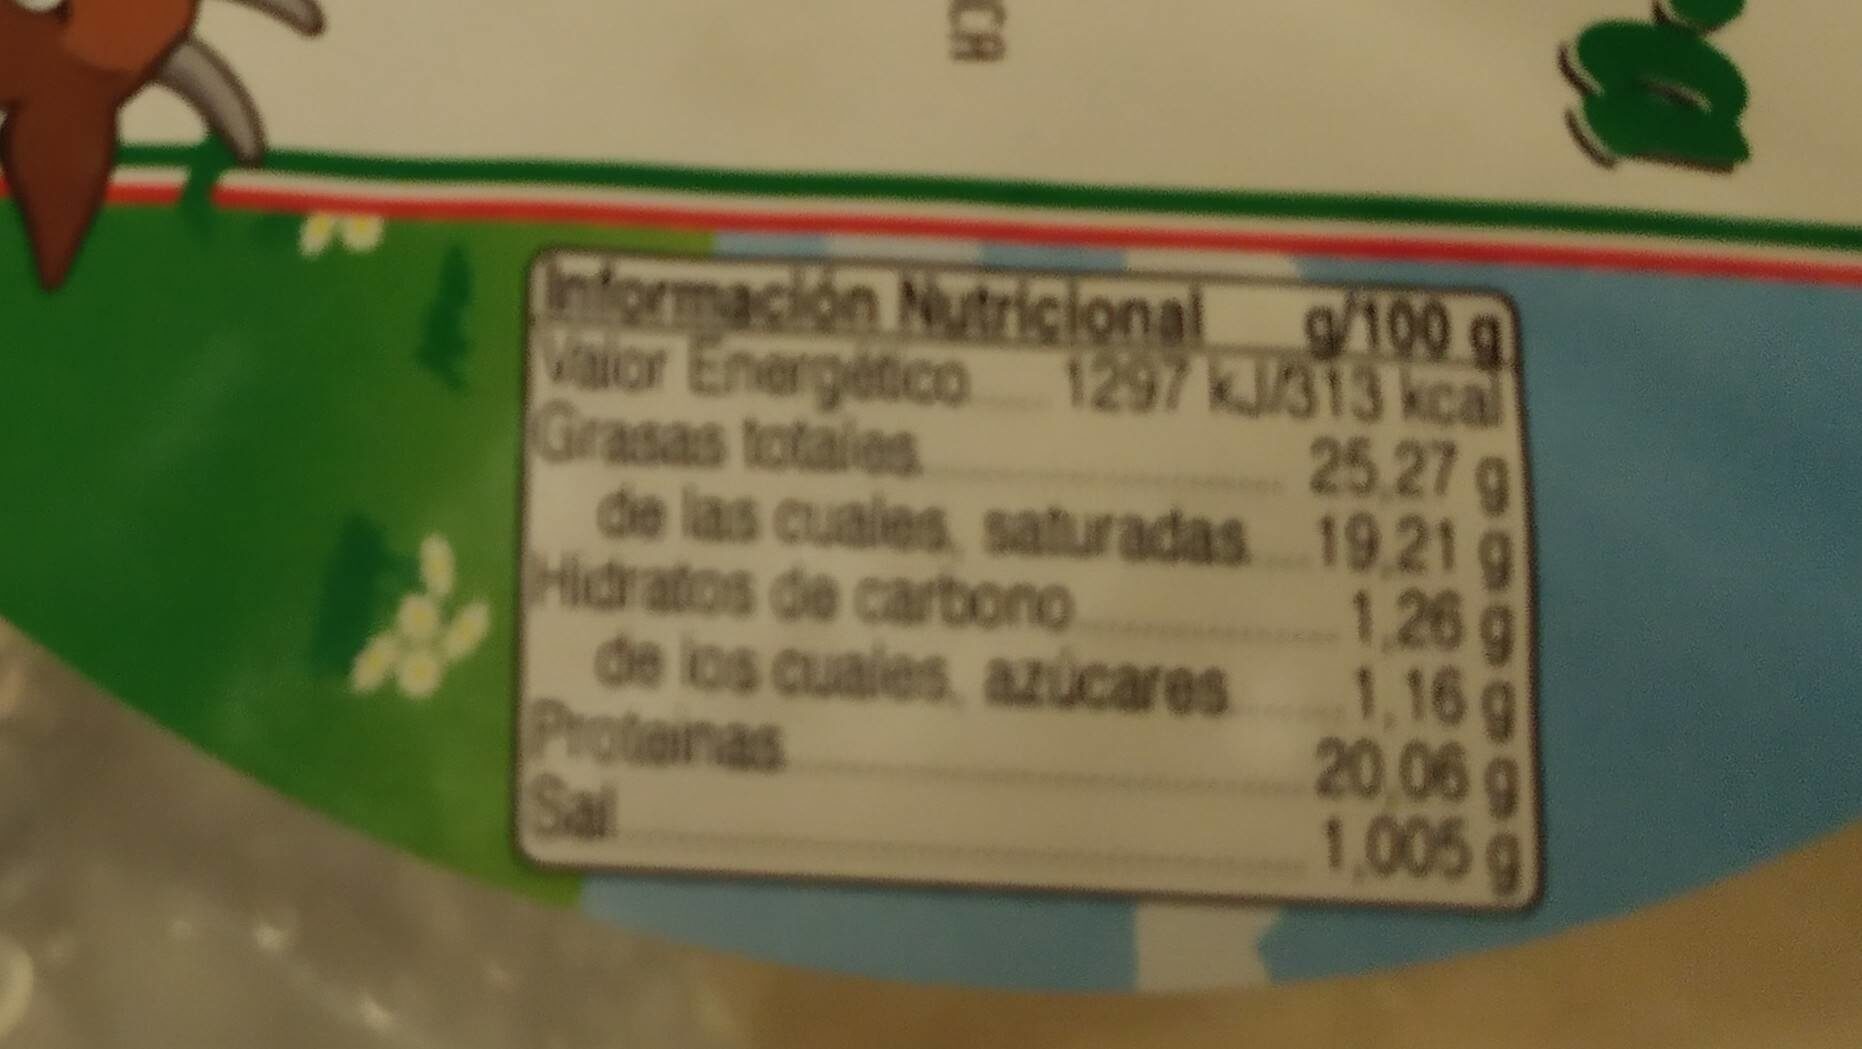 Queso fresco de cabra - Nutrition facts - es